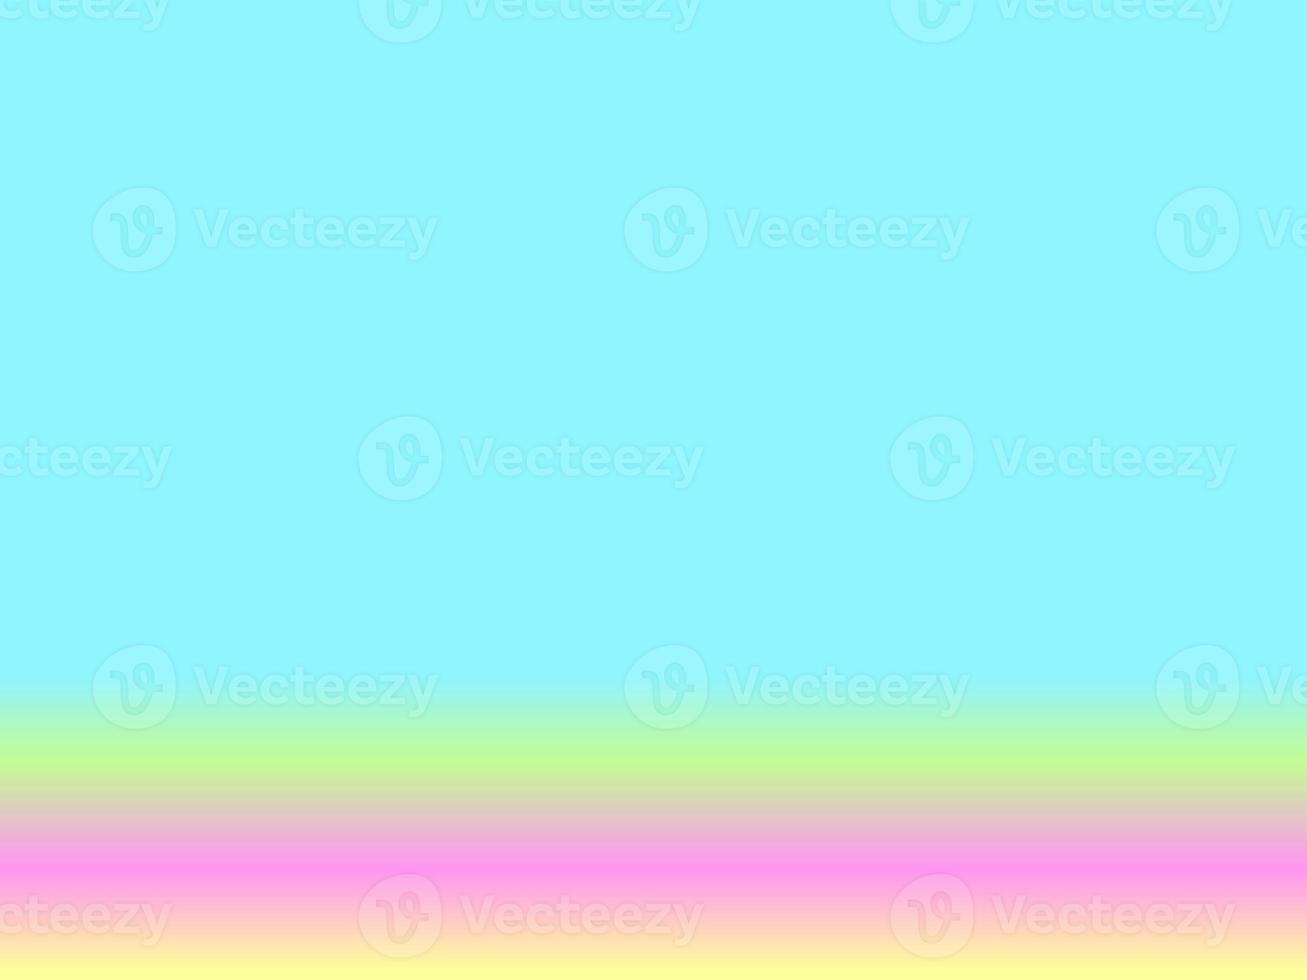 fundo de cor pastel gradiente para banner. design horizontal moderno para aplicativos móveis. arco-íris neon pastel. papel ultravioleta. modelo para apresentação. capa para web design. foto profissional